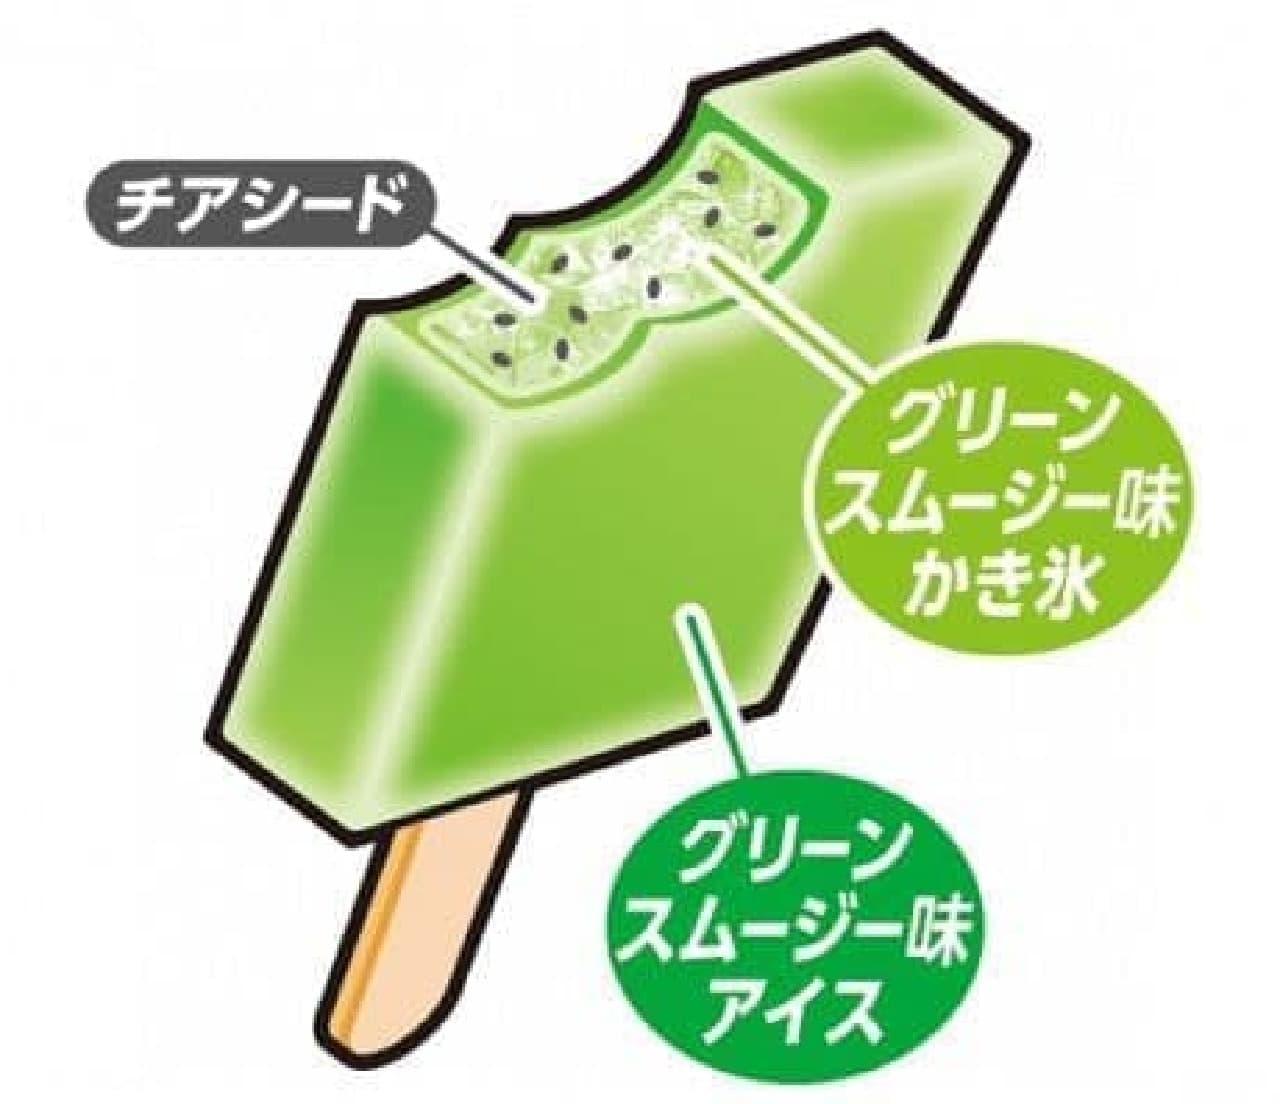 Akagi Nyugyo "Gari-Gari-kun Rich Green Smoothie Flavor"